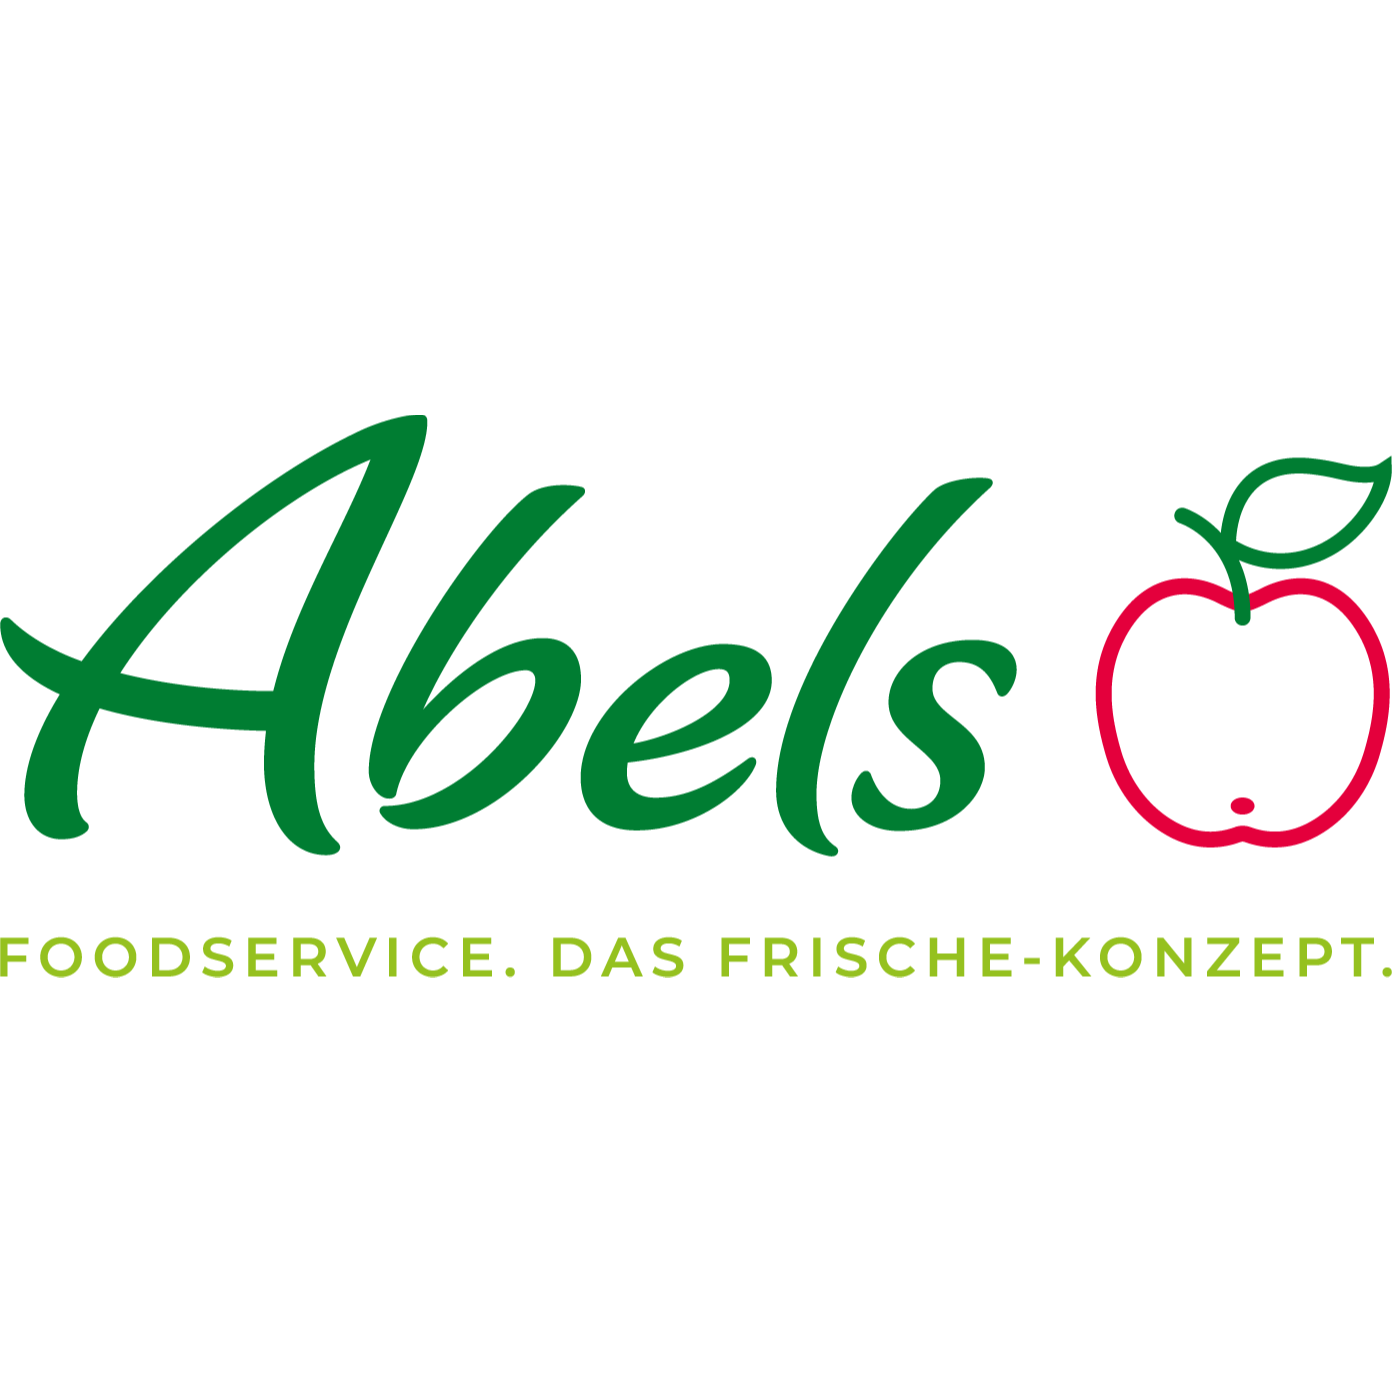 Foodservice Abels Früchte Welt liefert ihnen täglich frisches Obst und Gemüse in Bonn.

Als Spezialist im Großhandel für Obst und Gemüse beliefern wir seit über 60 Jahren - auch überregional den Lebensmittelgroßhandel und Einzelhandel, die Hotellerie, Gas